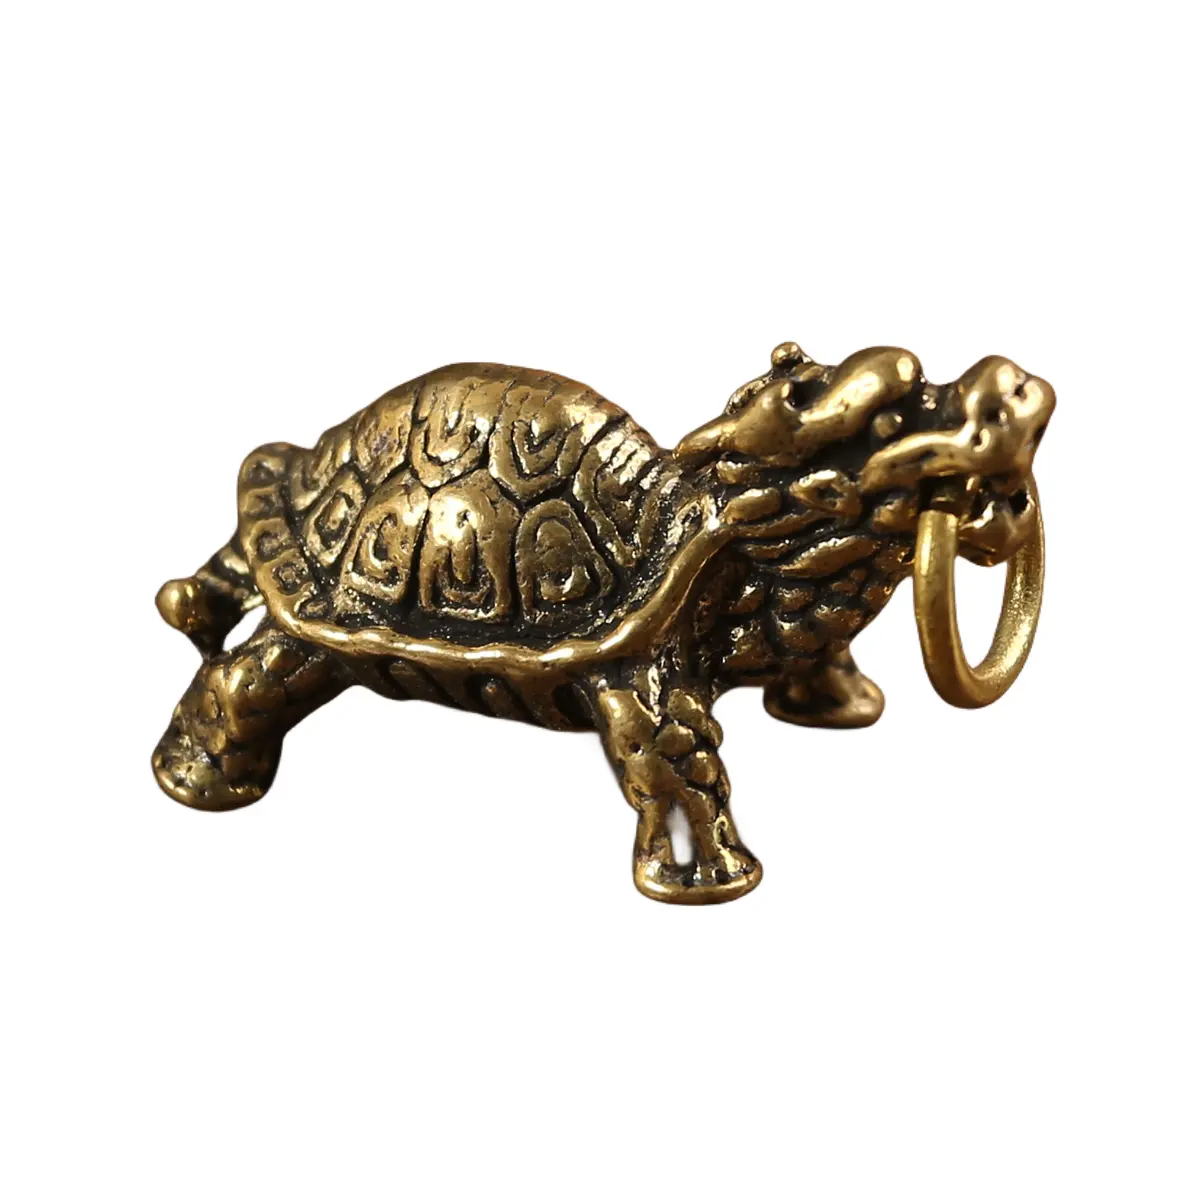 Venta caliente chino dragón tortuga estatua bronce sólido ornamento Metal latón escultura fundición